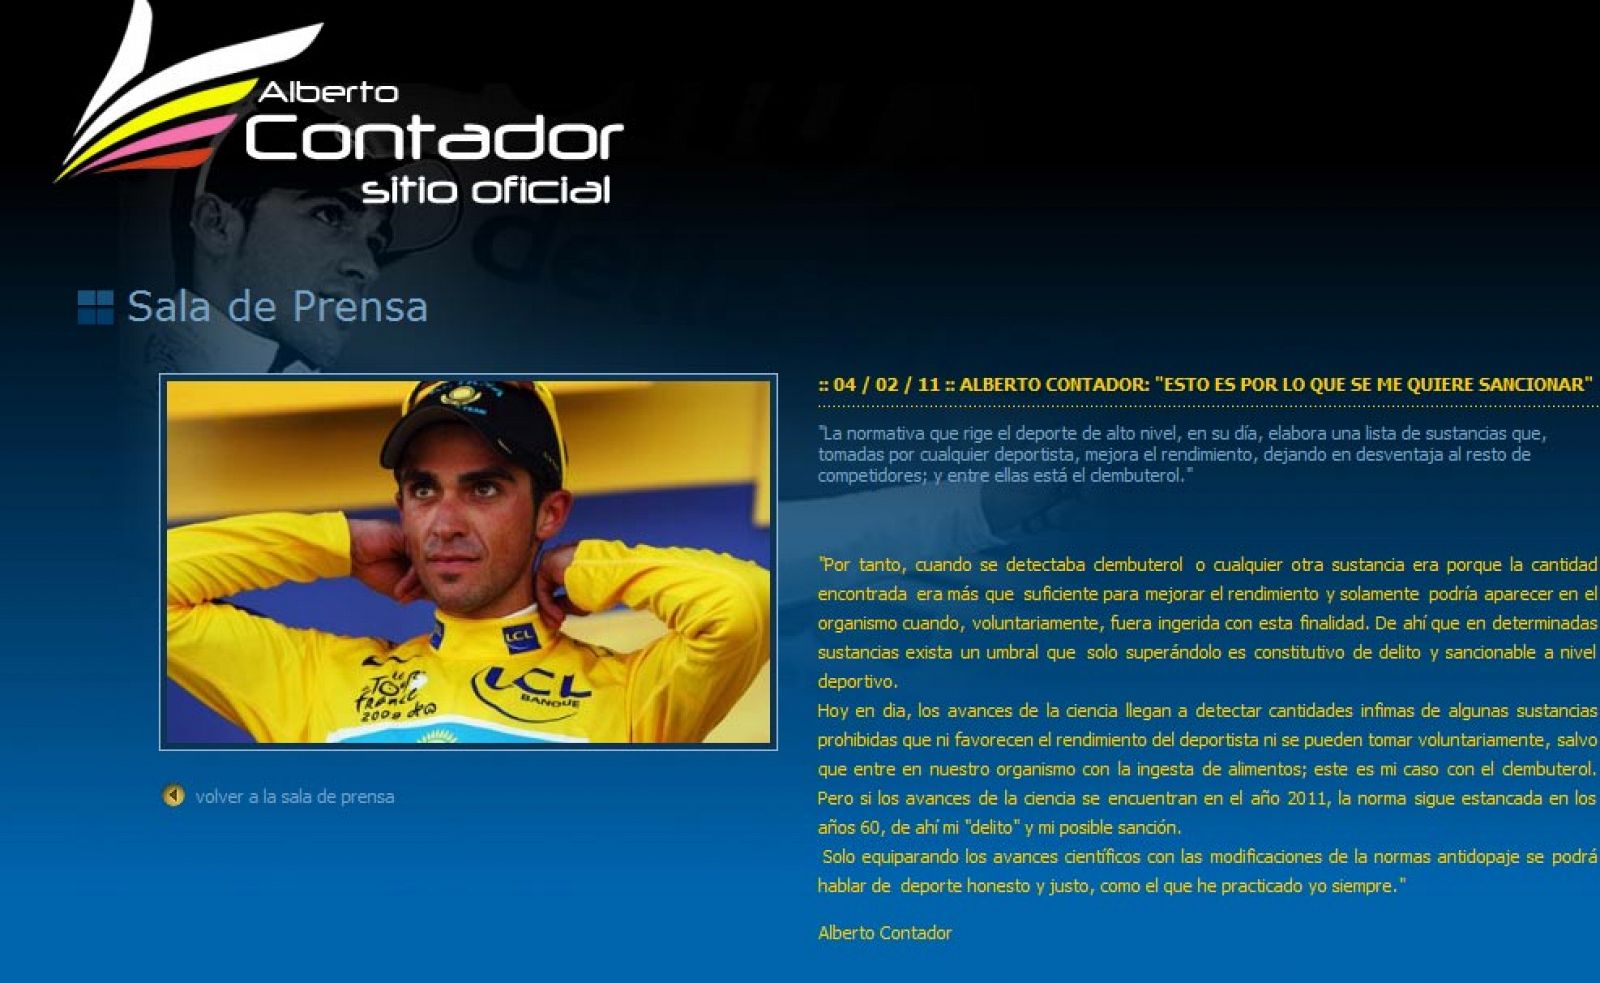 Captura de la nota de prensa colgada en la web oficial de Alberto Contador